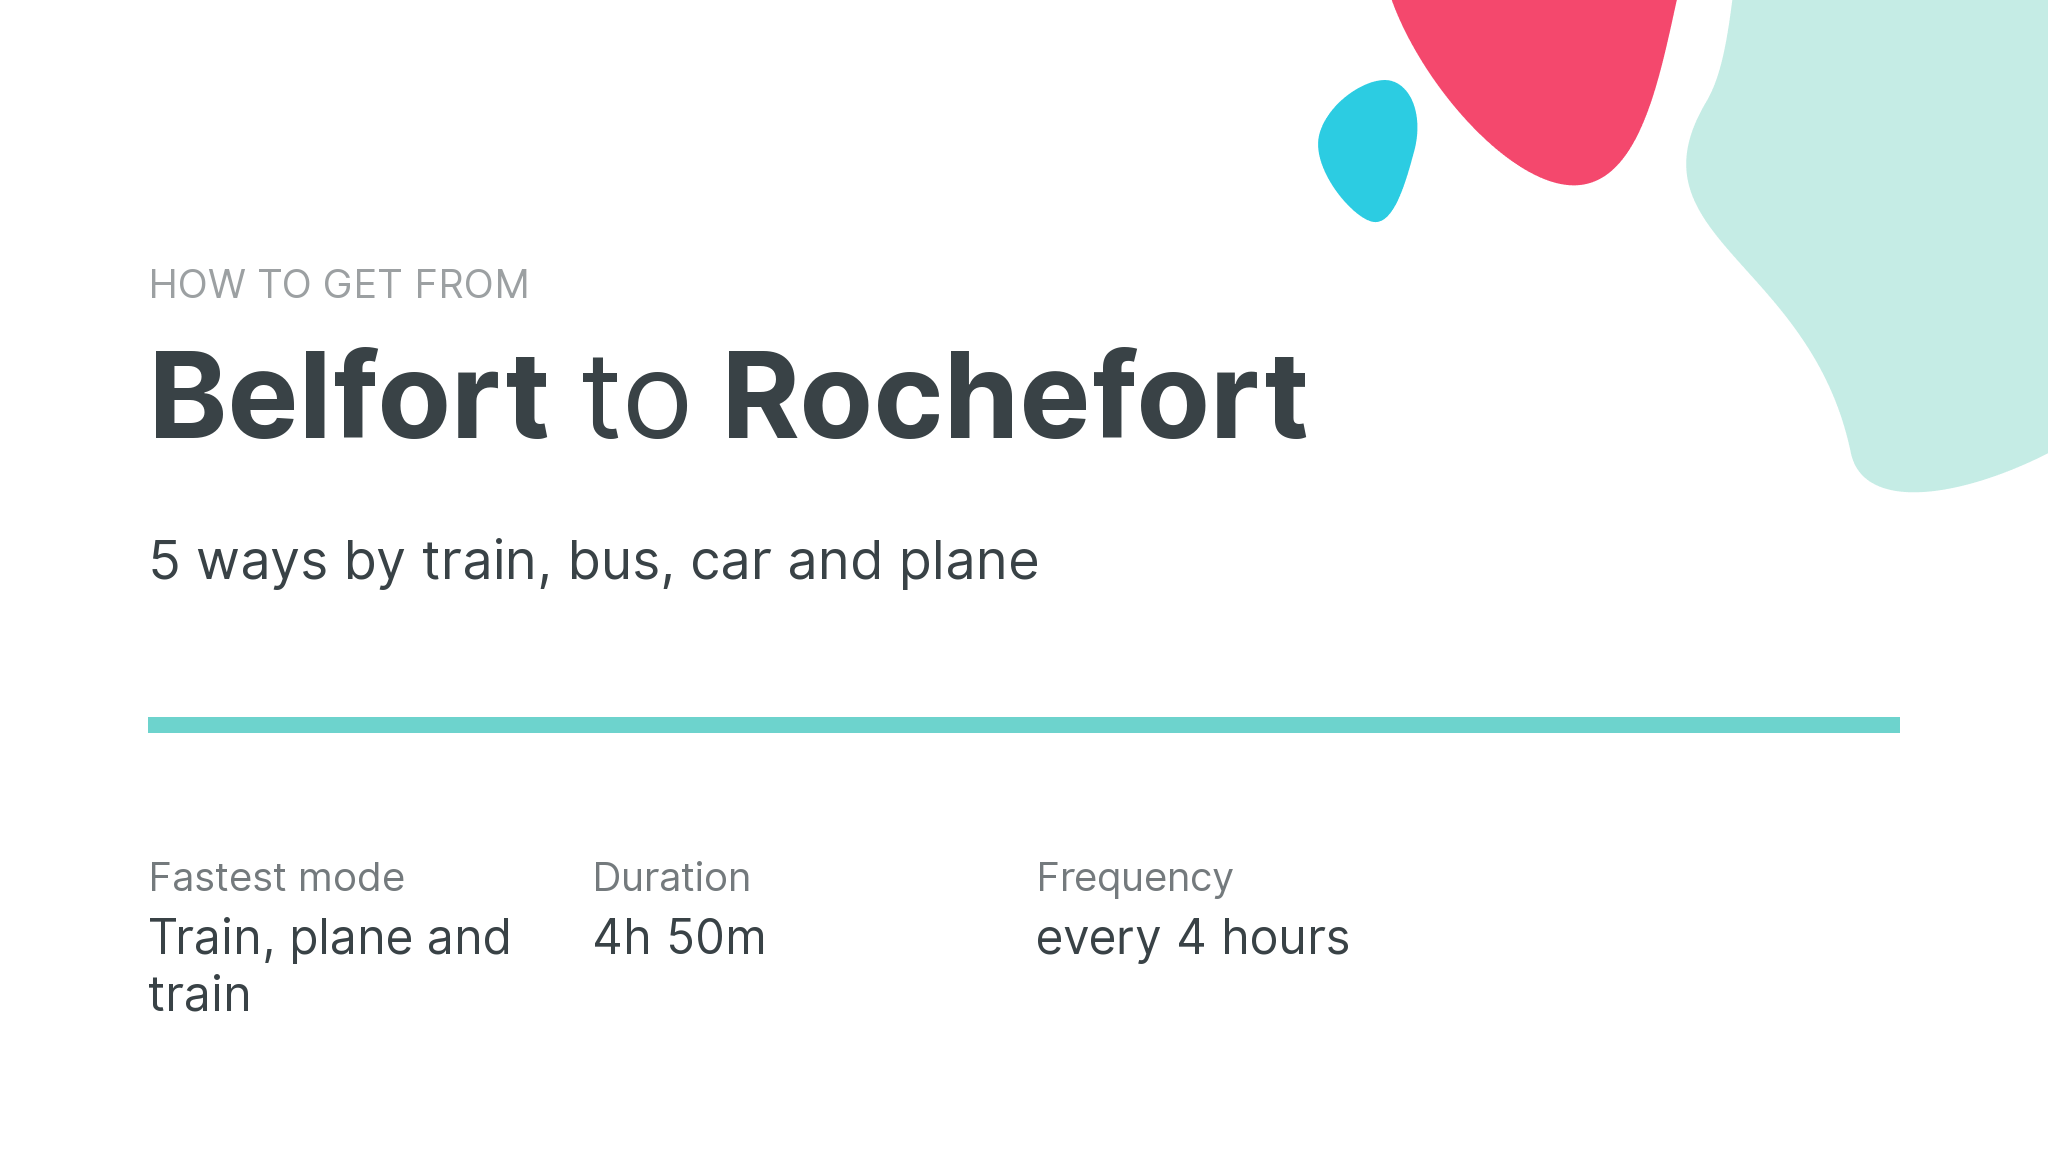 How do I get from Belfort to Rochefort